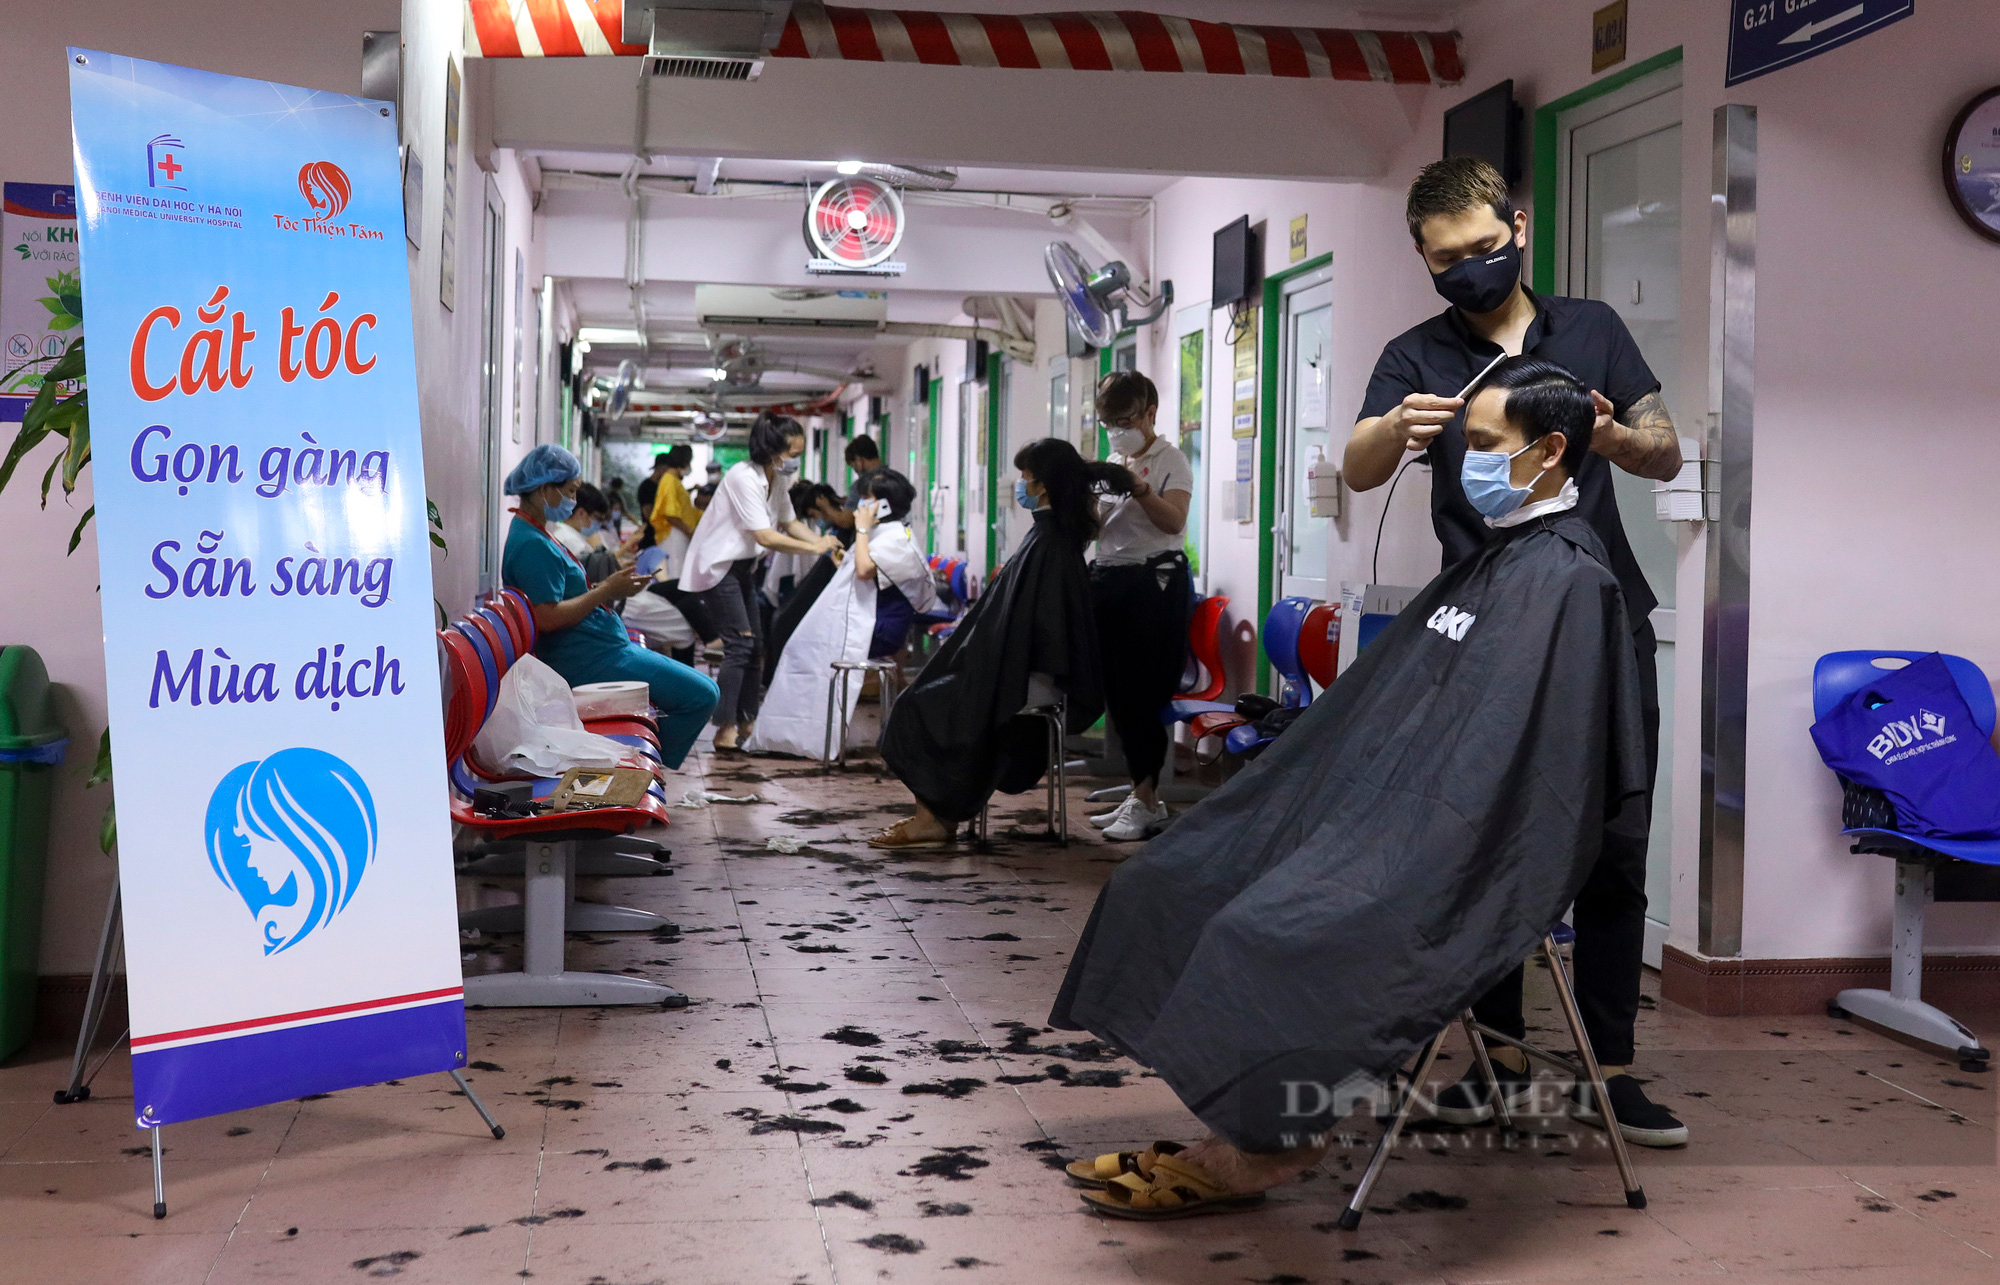 &quot;Salon tóc đặc biệt&quot; cho những y bác sỹ lên đường chống dịch Covid-19 tại Hà Nội - Ảnh 1.